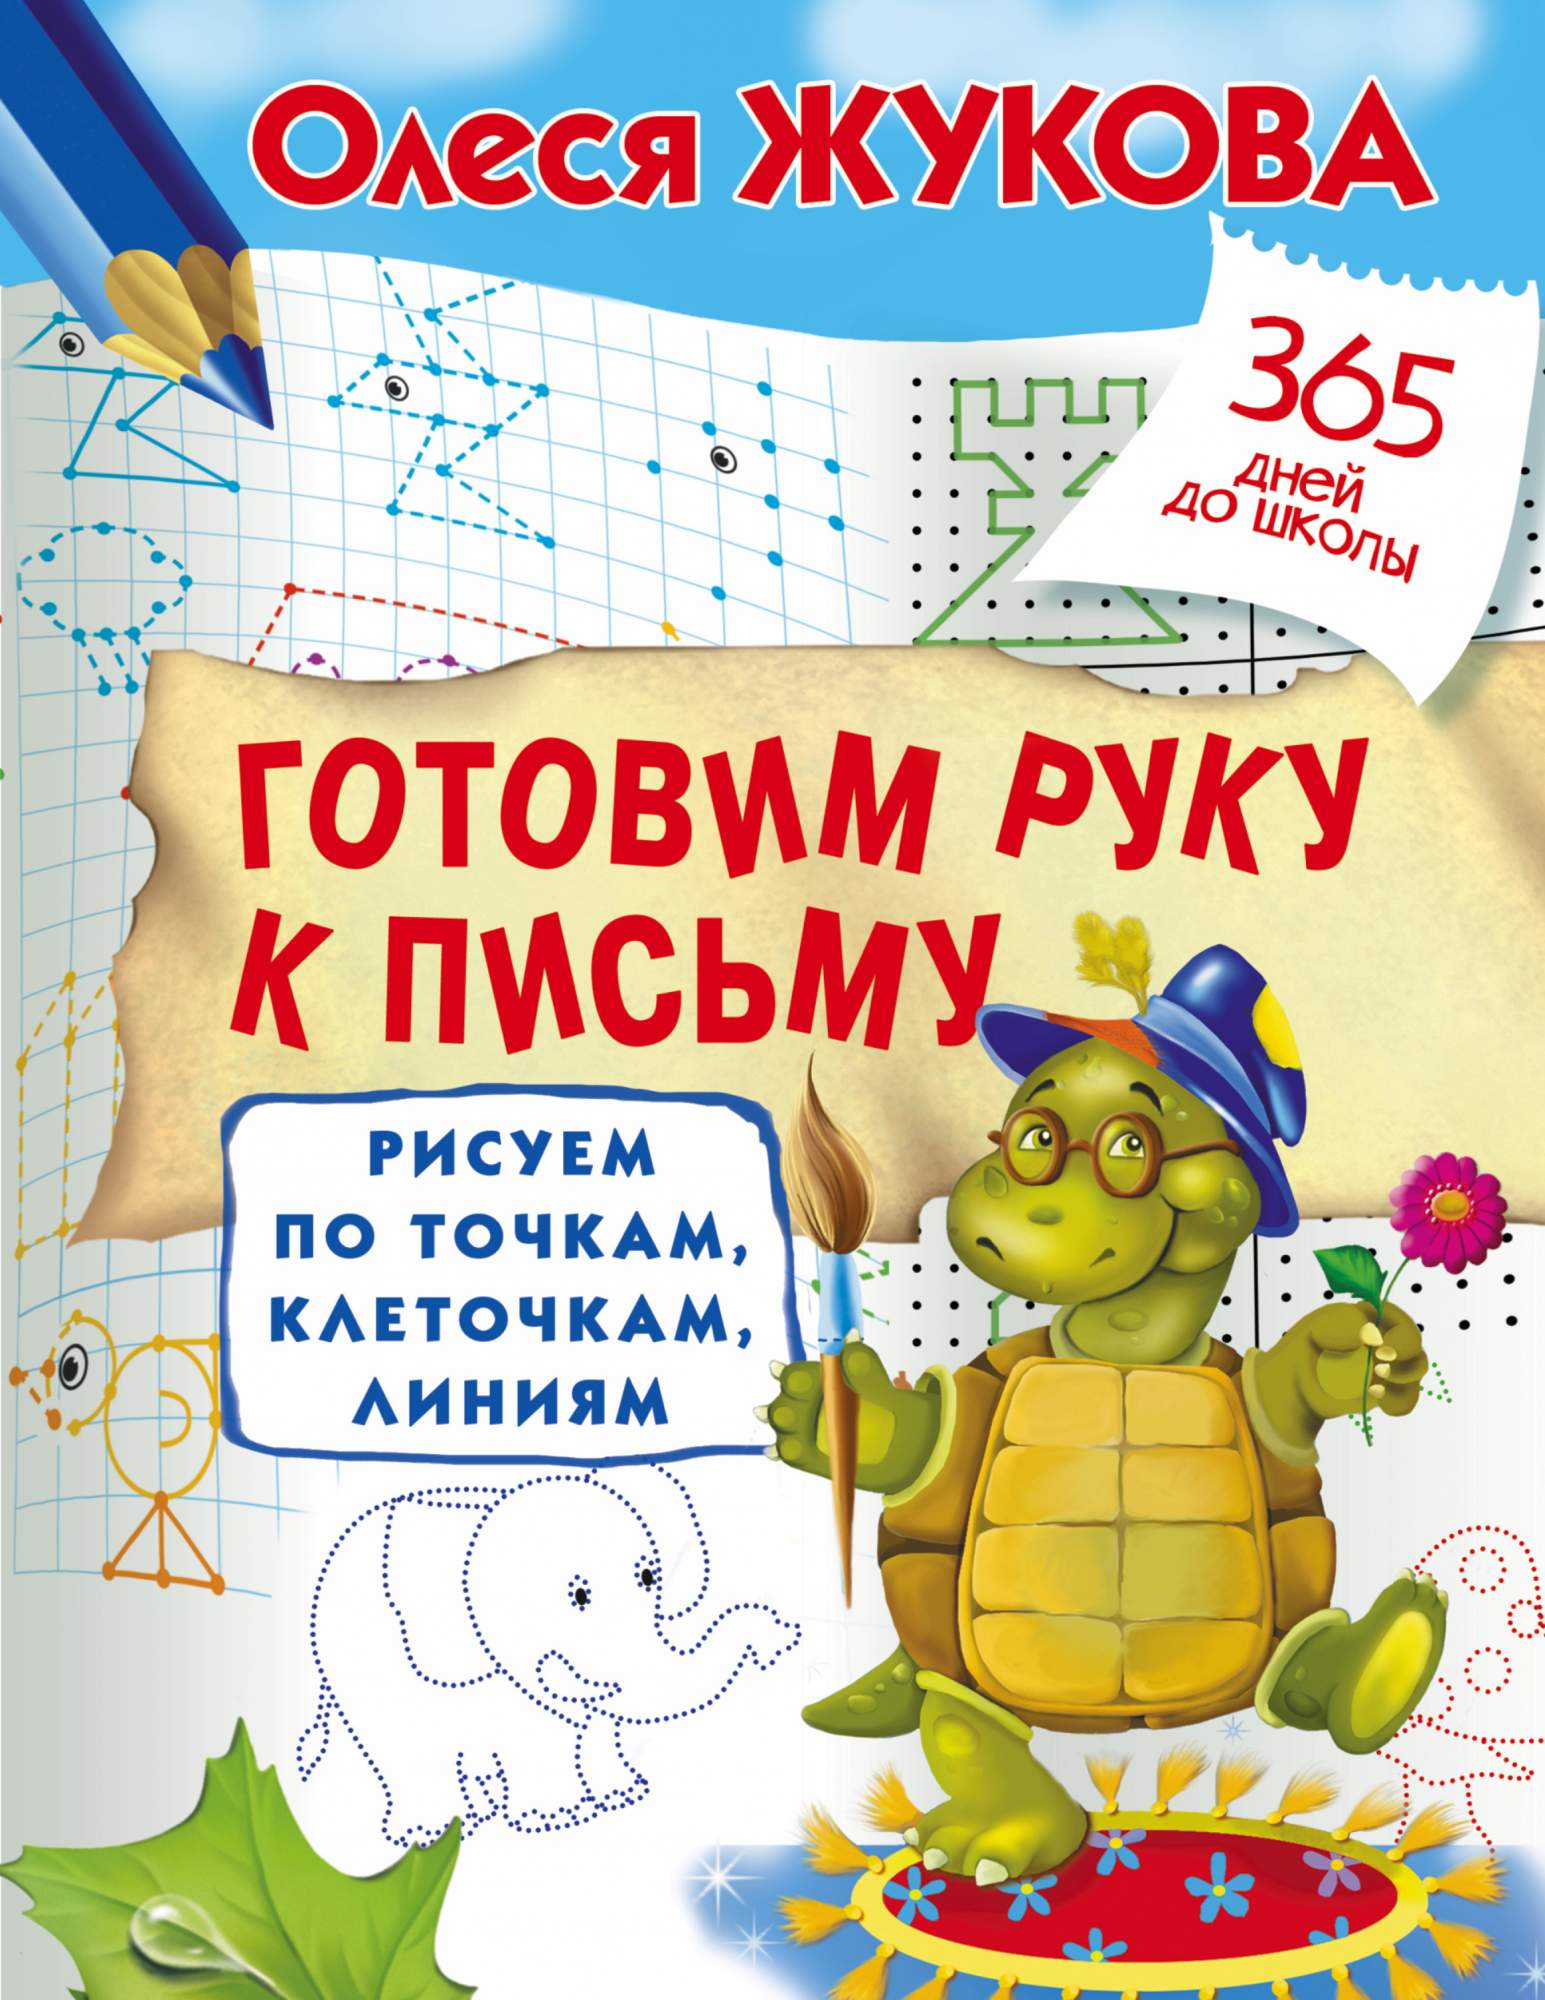 Интернет – магазин книг «Книжный барс». Купить книги в интернет-магазине с доставкой по России